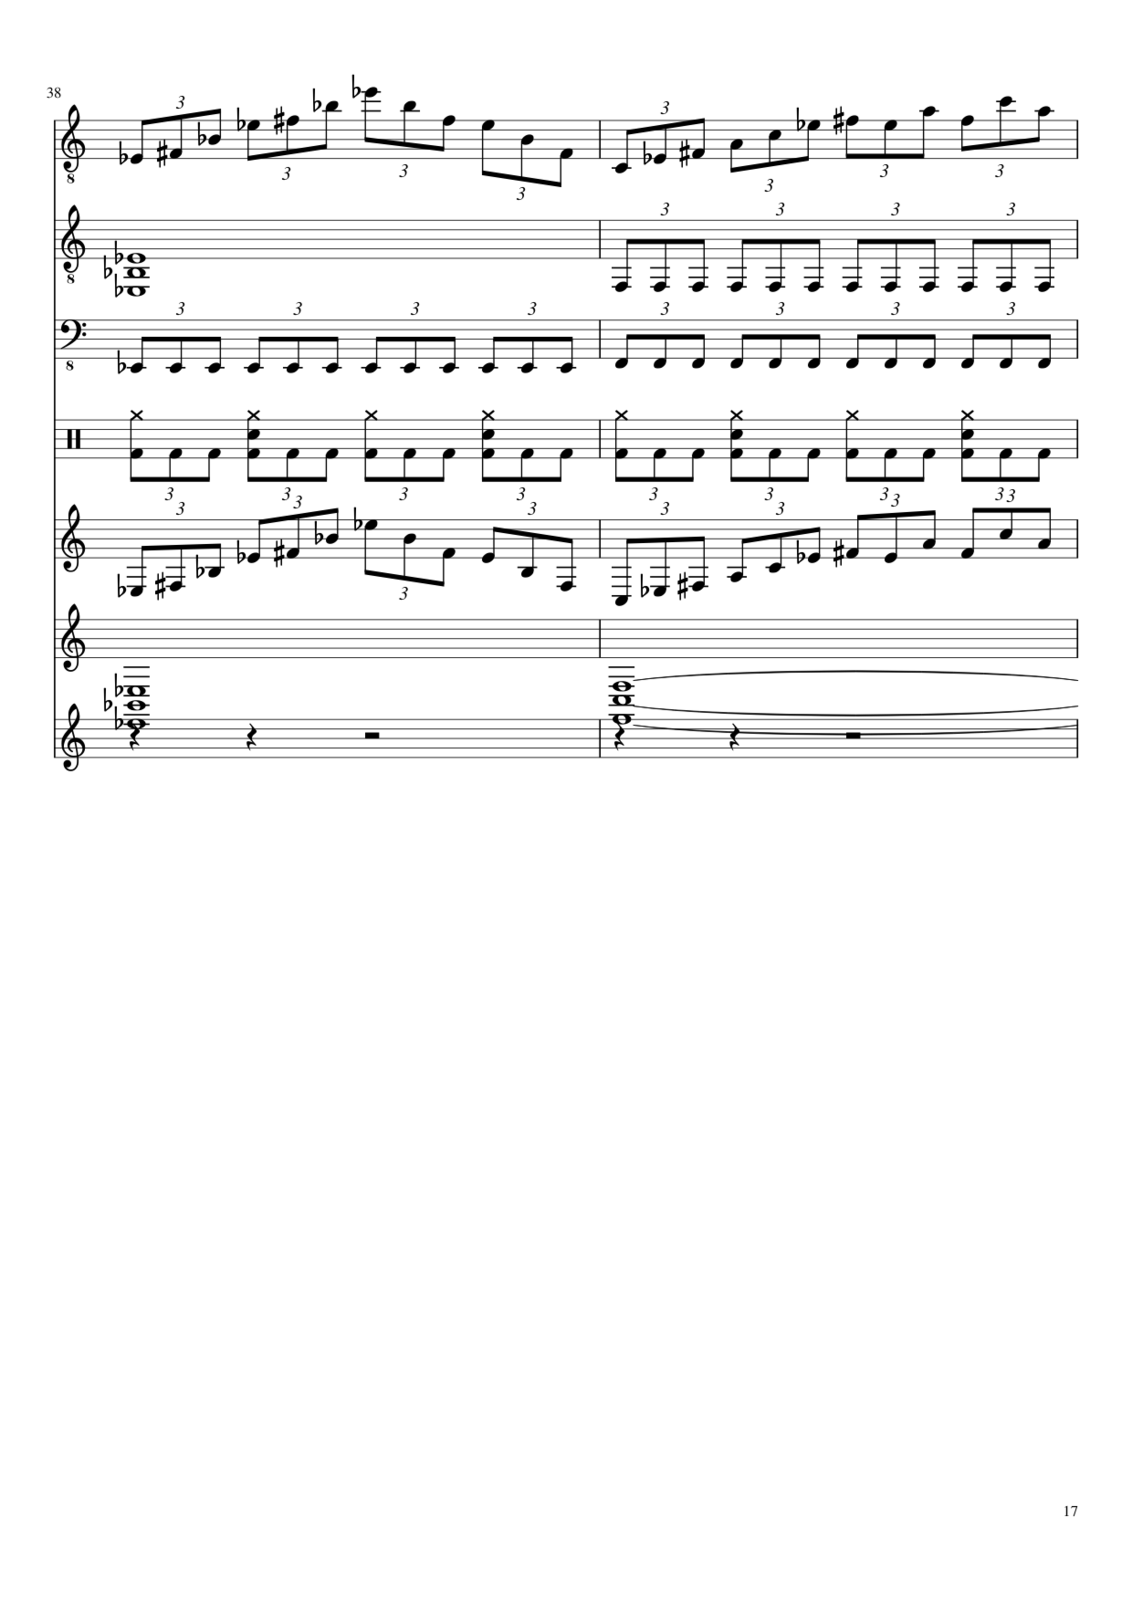 Vospominaniya o byiloy lyubvi slide, Image 11